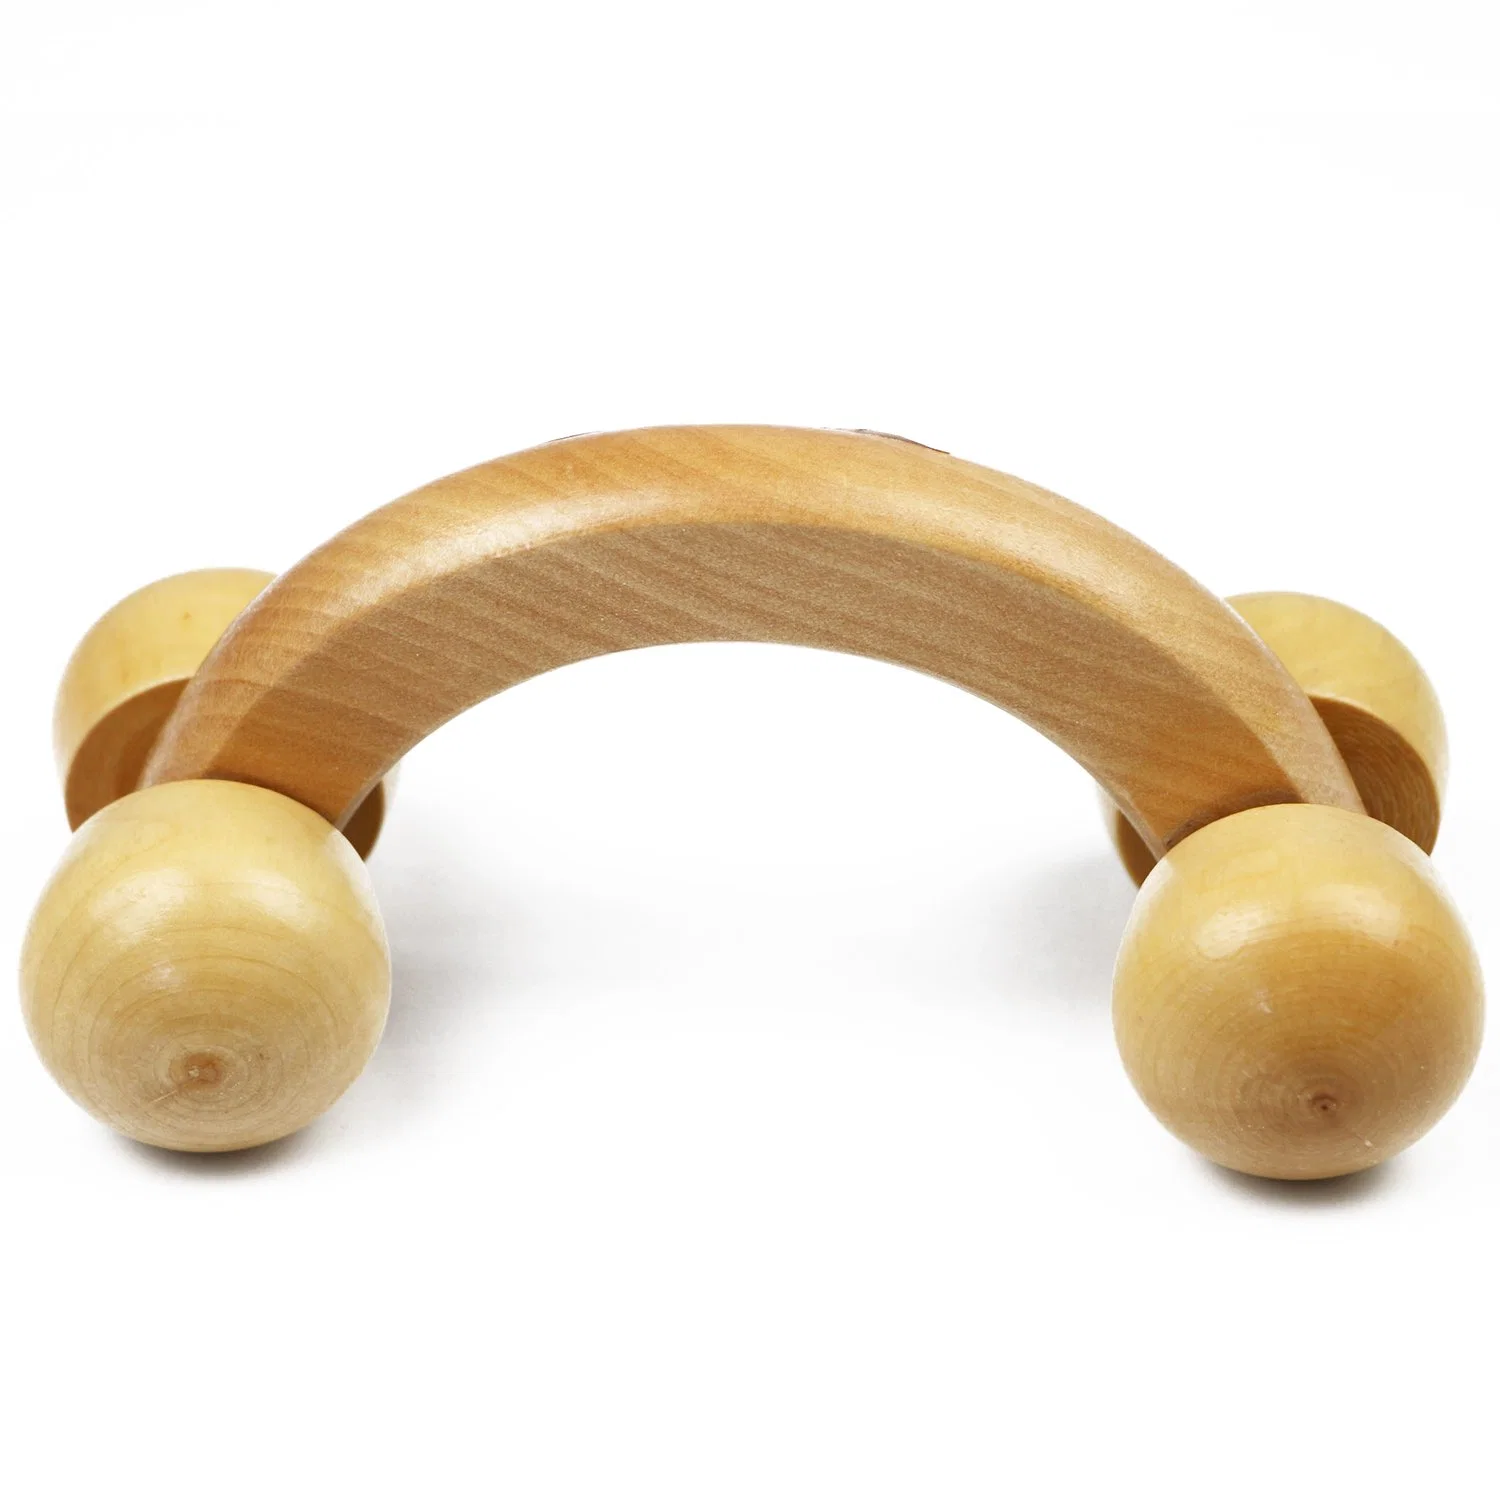 4 Balle en bois Massage manuel pour le corps Outil de rouleau de massage musculaire pour le cou, les épaules, les bras, les jambes et le corps.